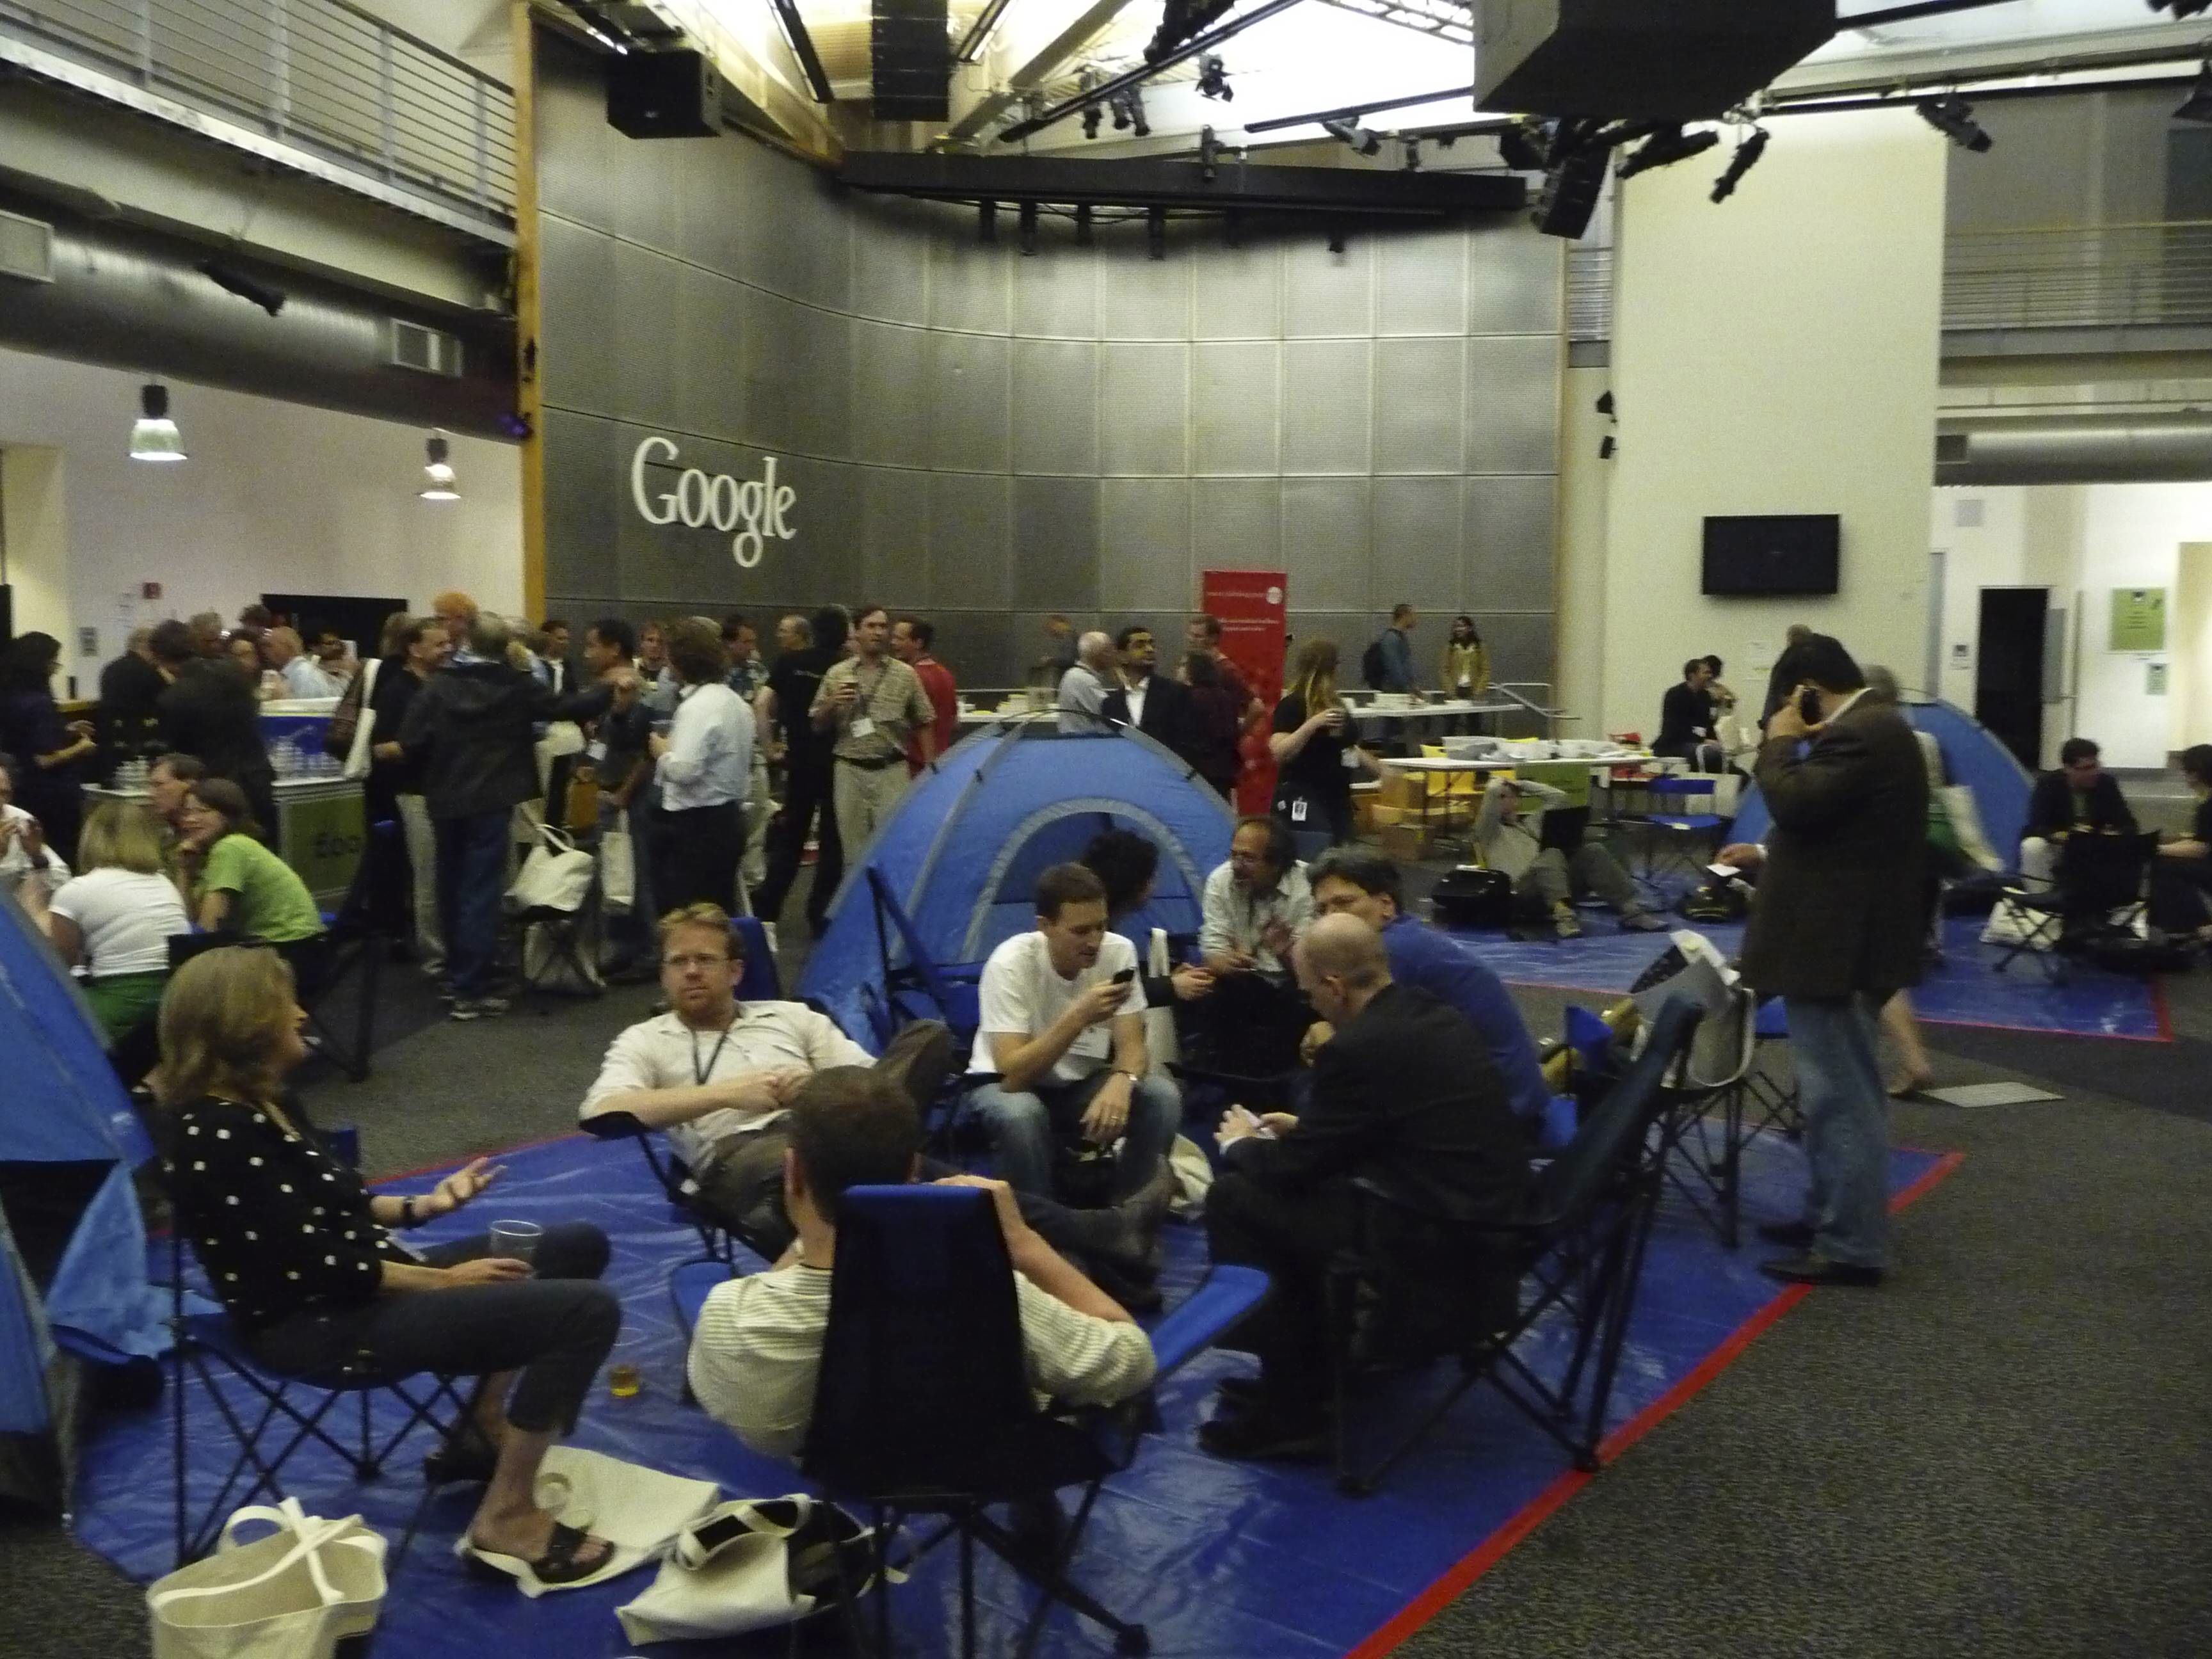 The "camp" in the Googlplex atrium